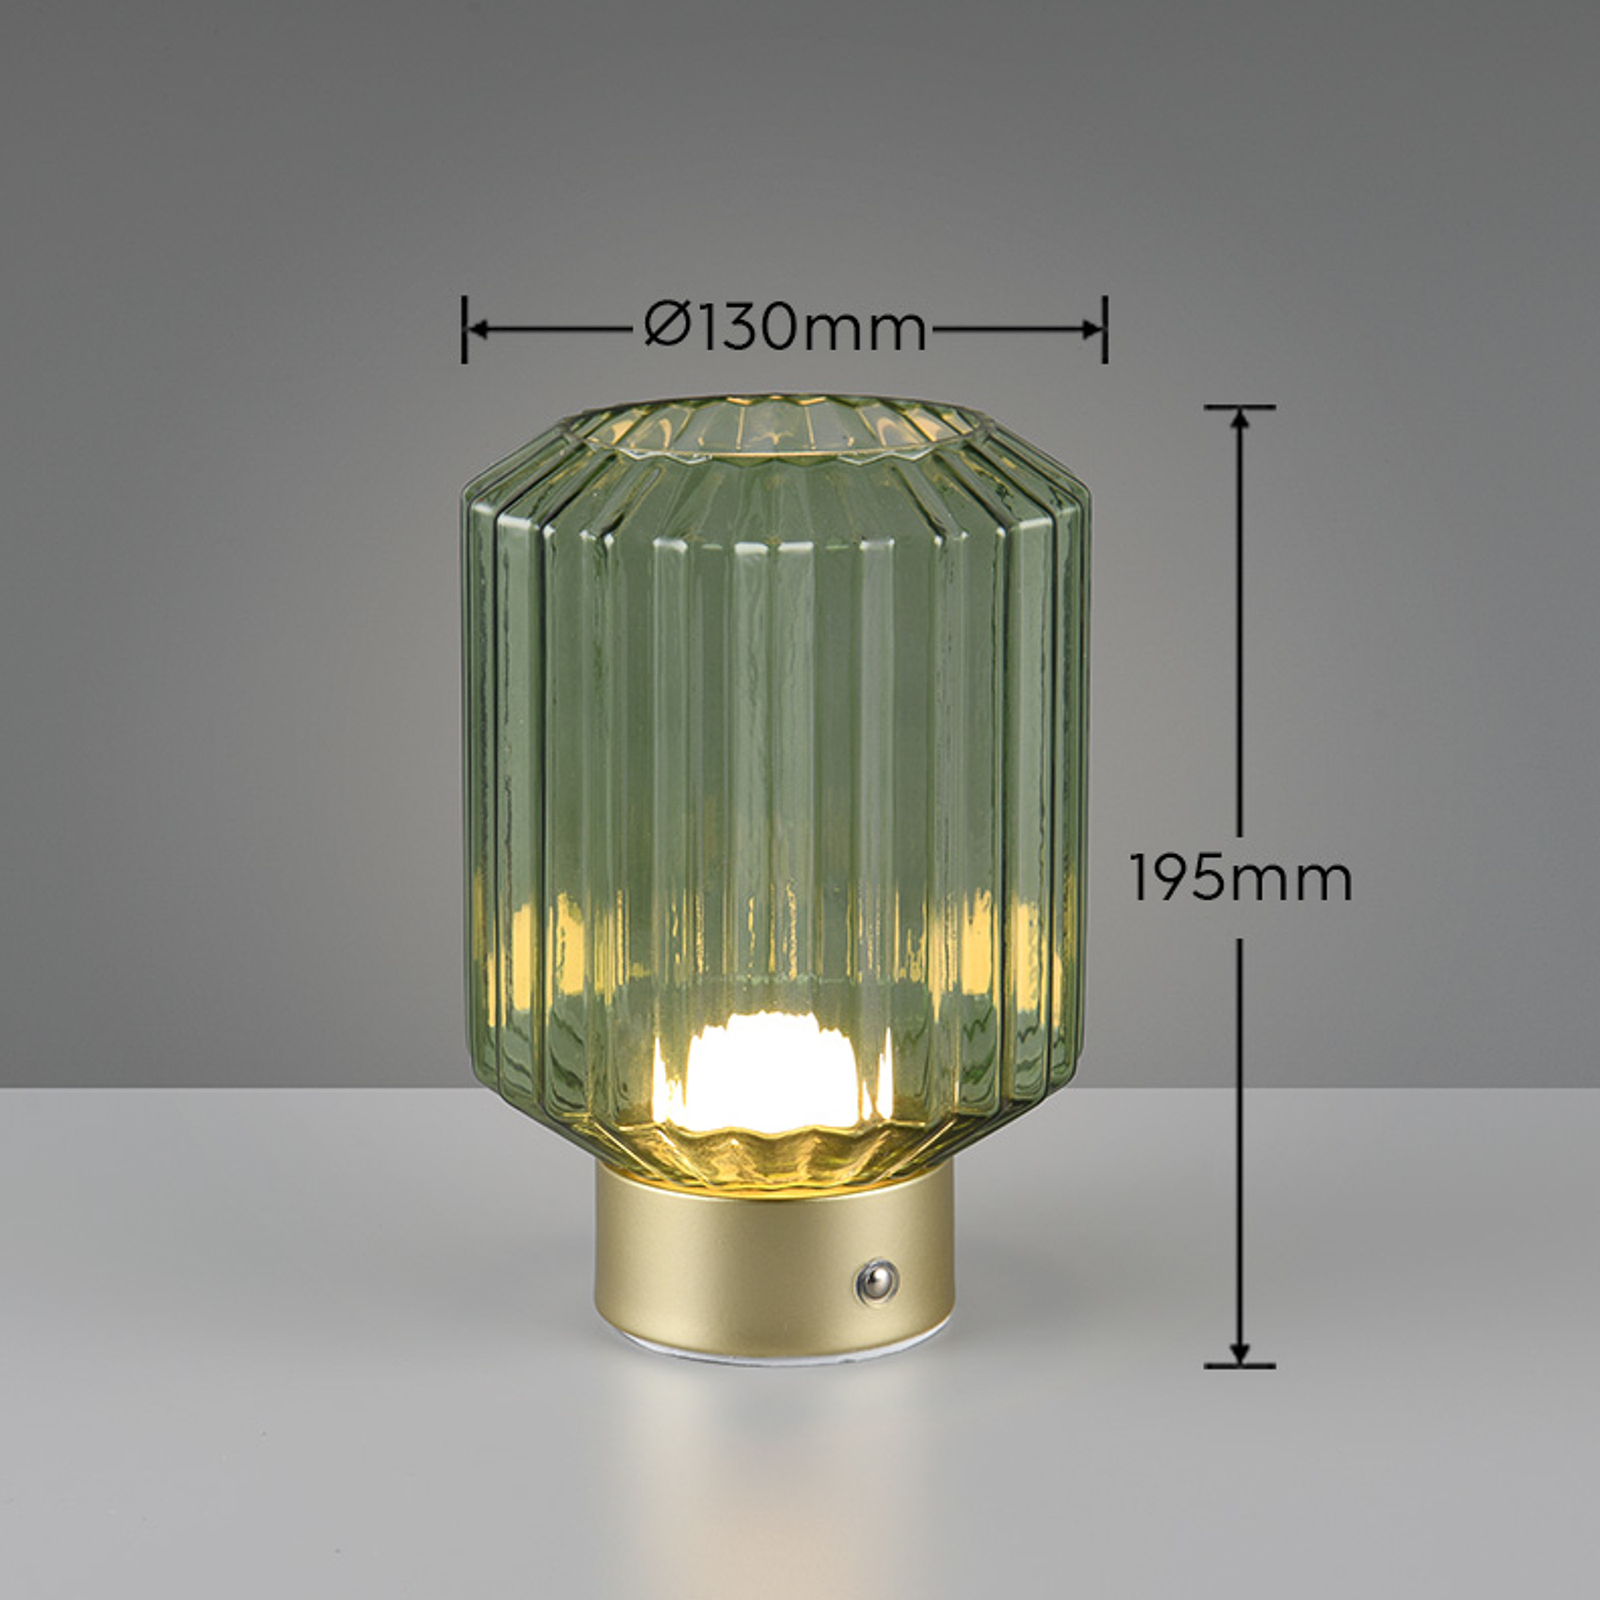 Lord LED ladattava pöytävalaisin, messinki/vihreä, korkeus 19,5 cm, lasi